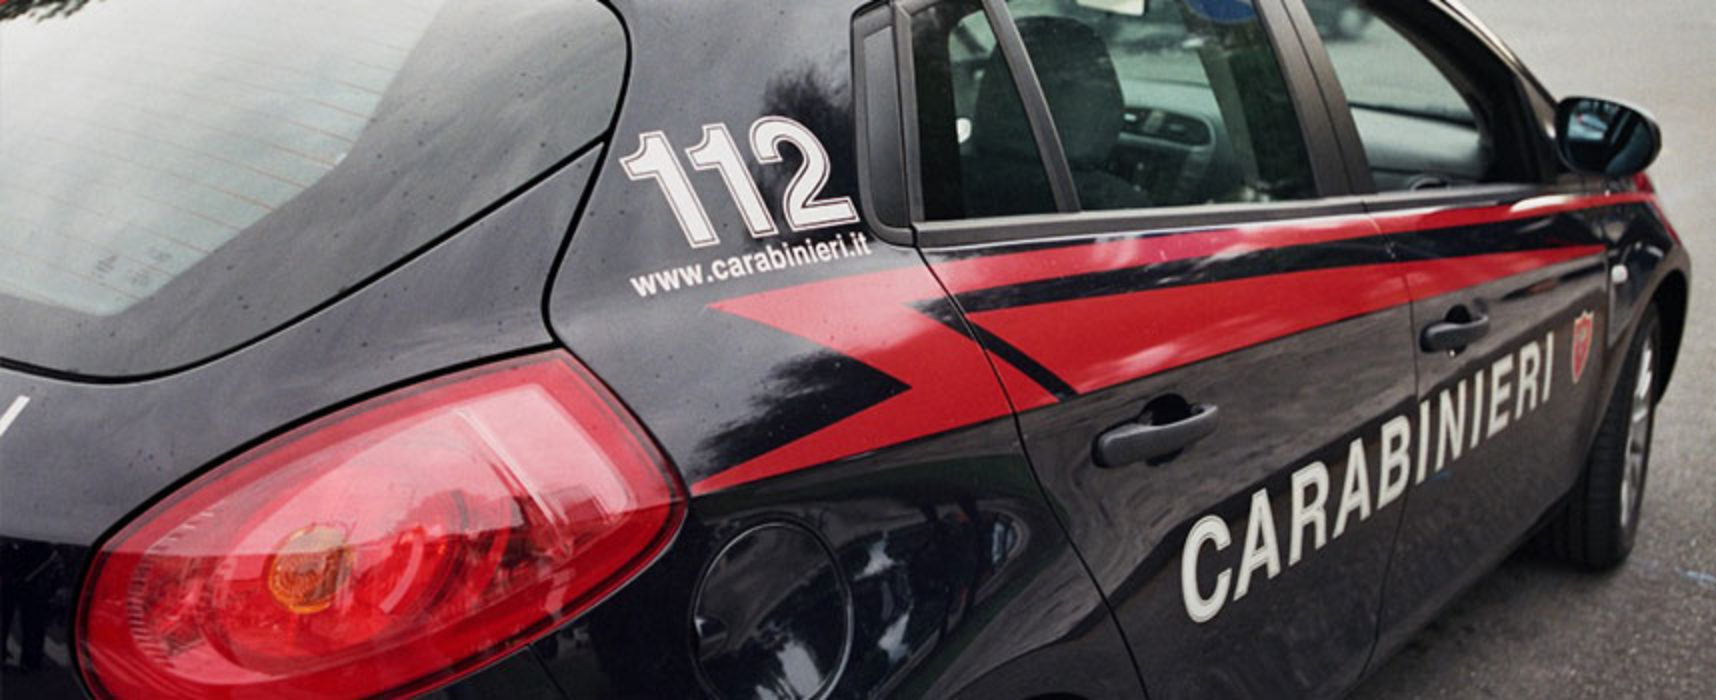 Controlli Carabinieri a movida Trani e Bisceglie, segnalate 7 persone per detenzione stupefacenti